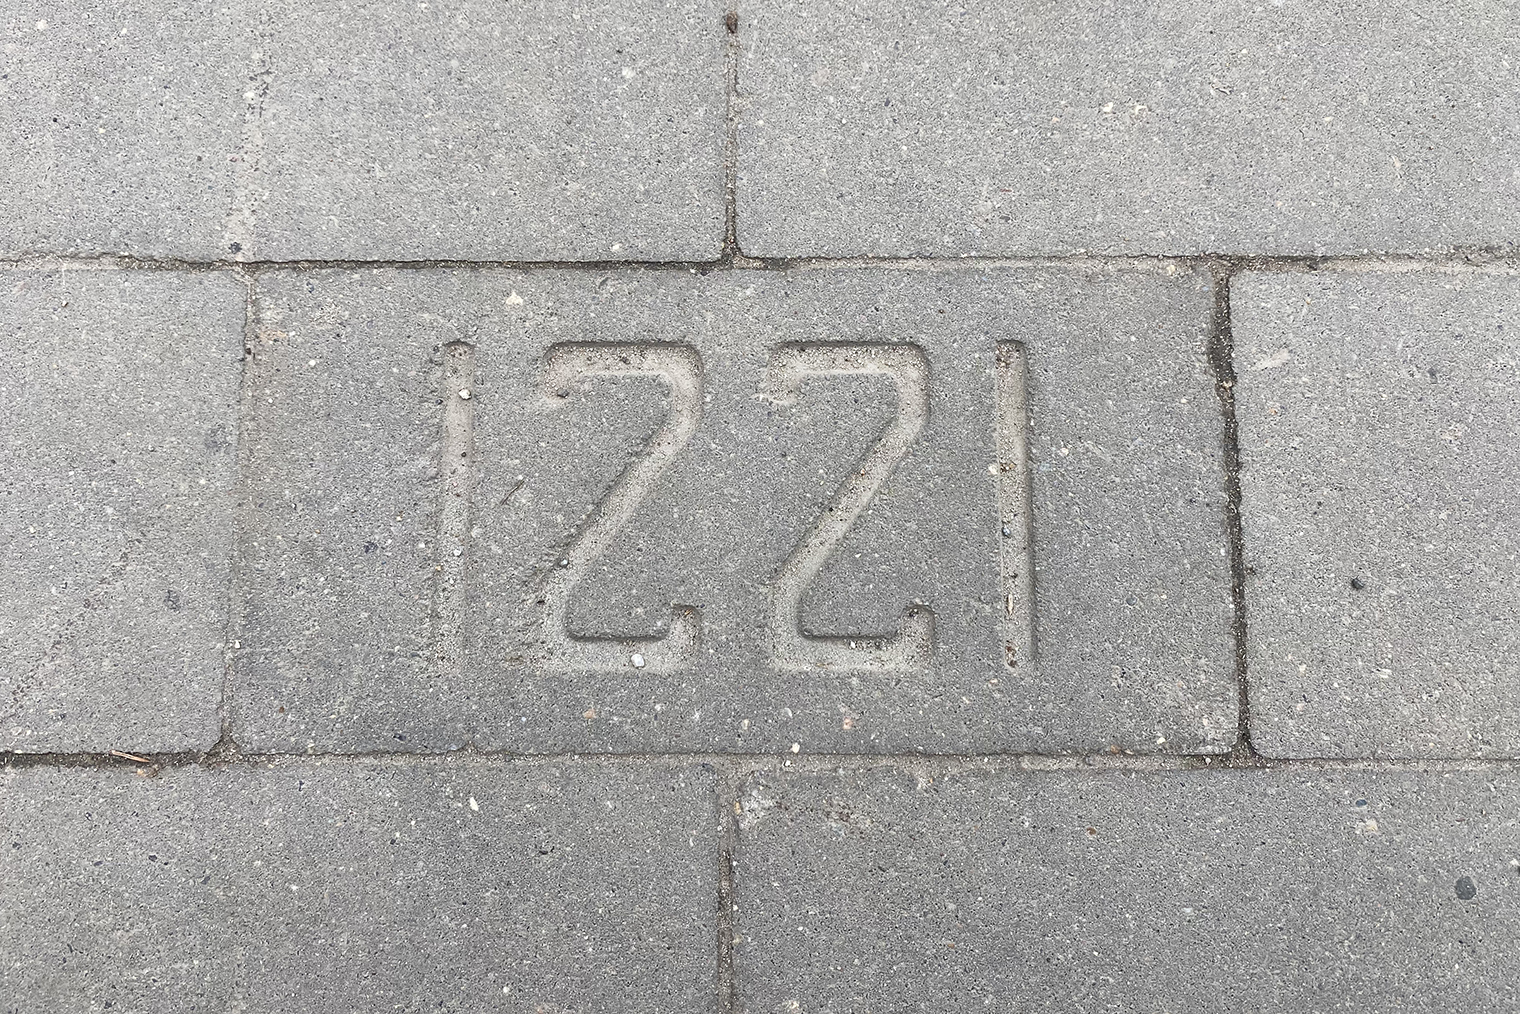 Кирпич на тротуаре с годом основания города — 1221